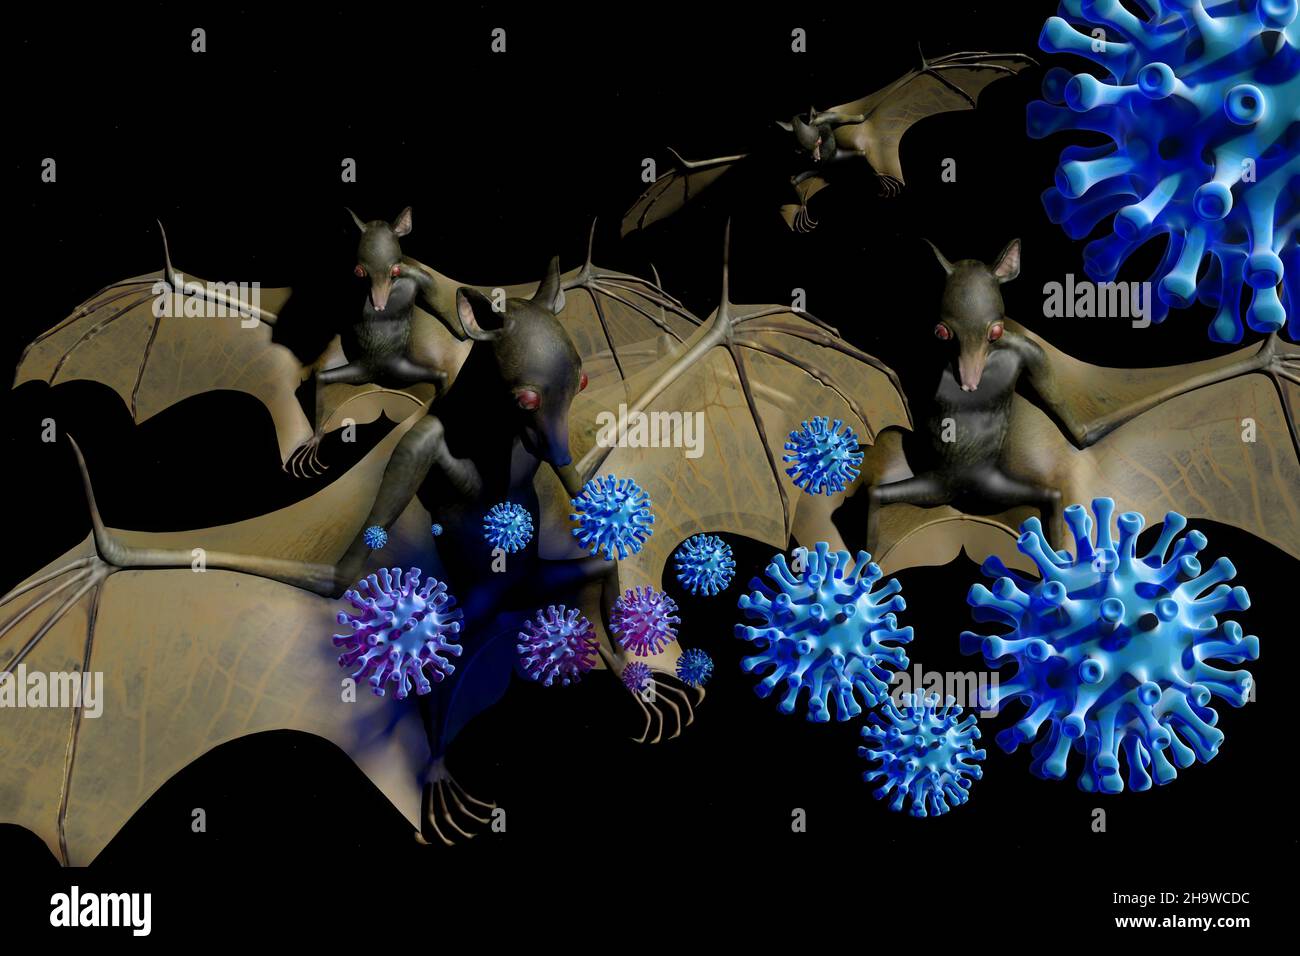 Viele Viren wandern von der Tierwelt zum Menschen. Fledermeuse abei eine grosse Rolle - Symbolbild: CGI-Visualizierung: Coronavirus Foto de stock